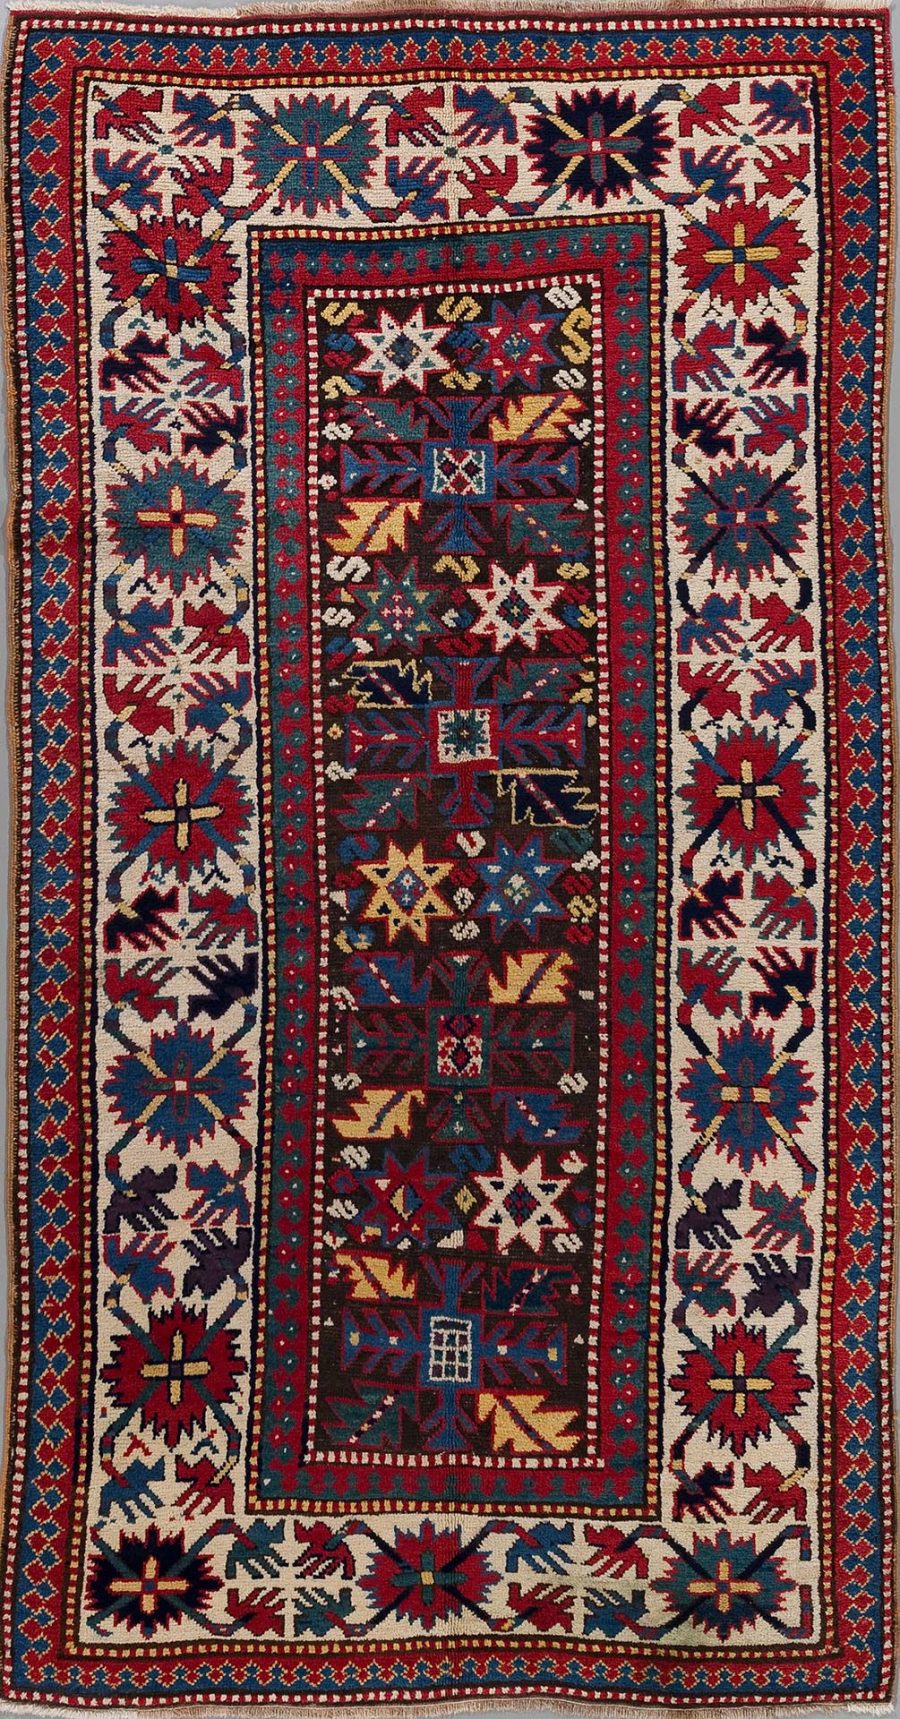 Traditioneller handgeknüpfter Teppich mit komplexem, geometrischem Muster in Rot-, Blau-, Weiß- und Gelbtönen mit mehrschichtigen Bordüren und einem zentralen dunklen Feld, das von einer breiten helleren Rahmenbordüre umgeben ist.